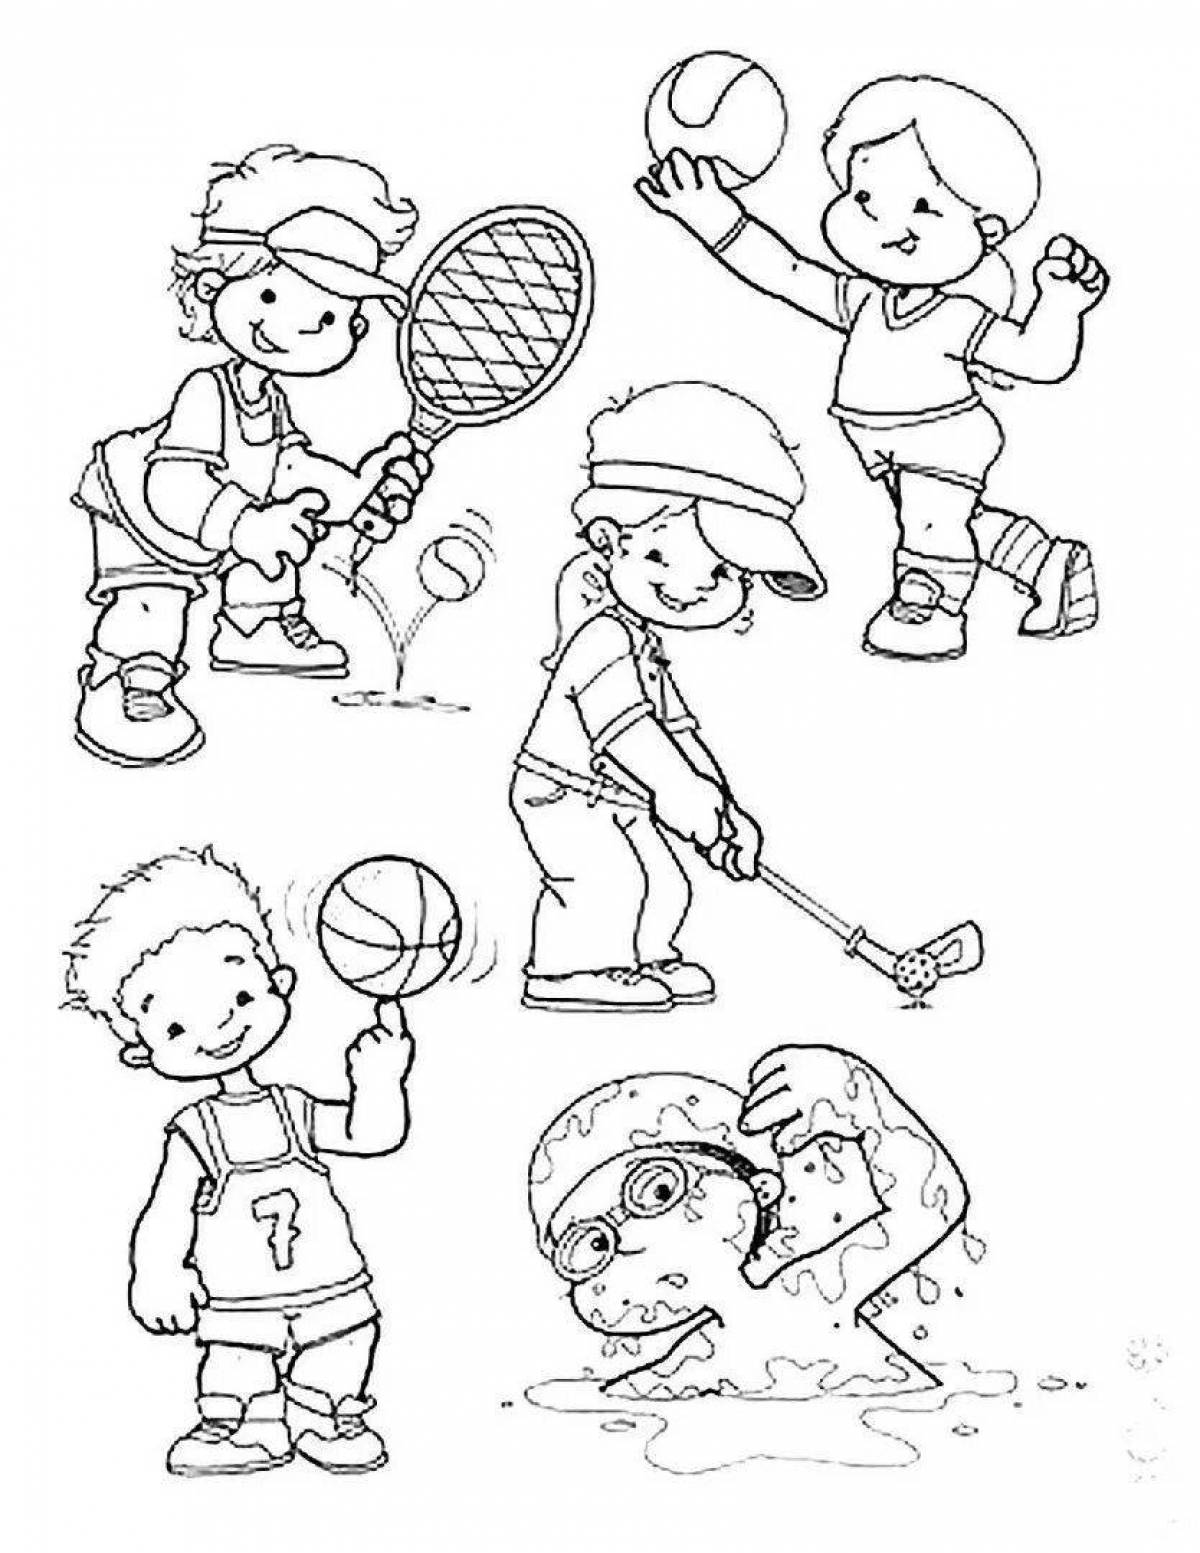 Привлекательные раскраски спортсменов разных видов спорта для детей